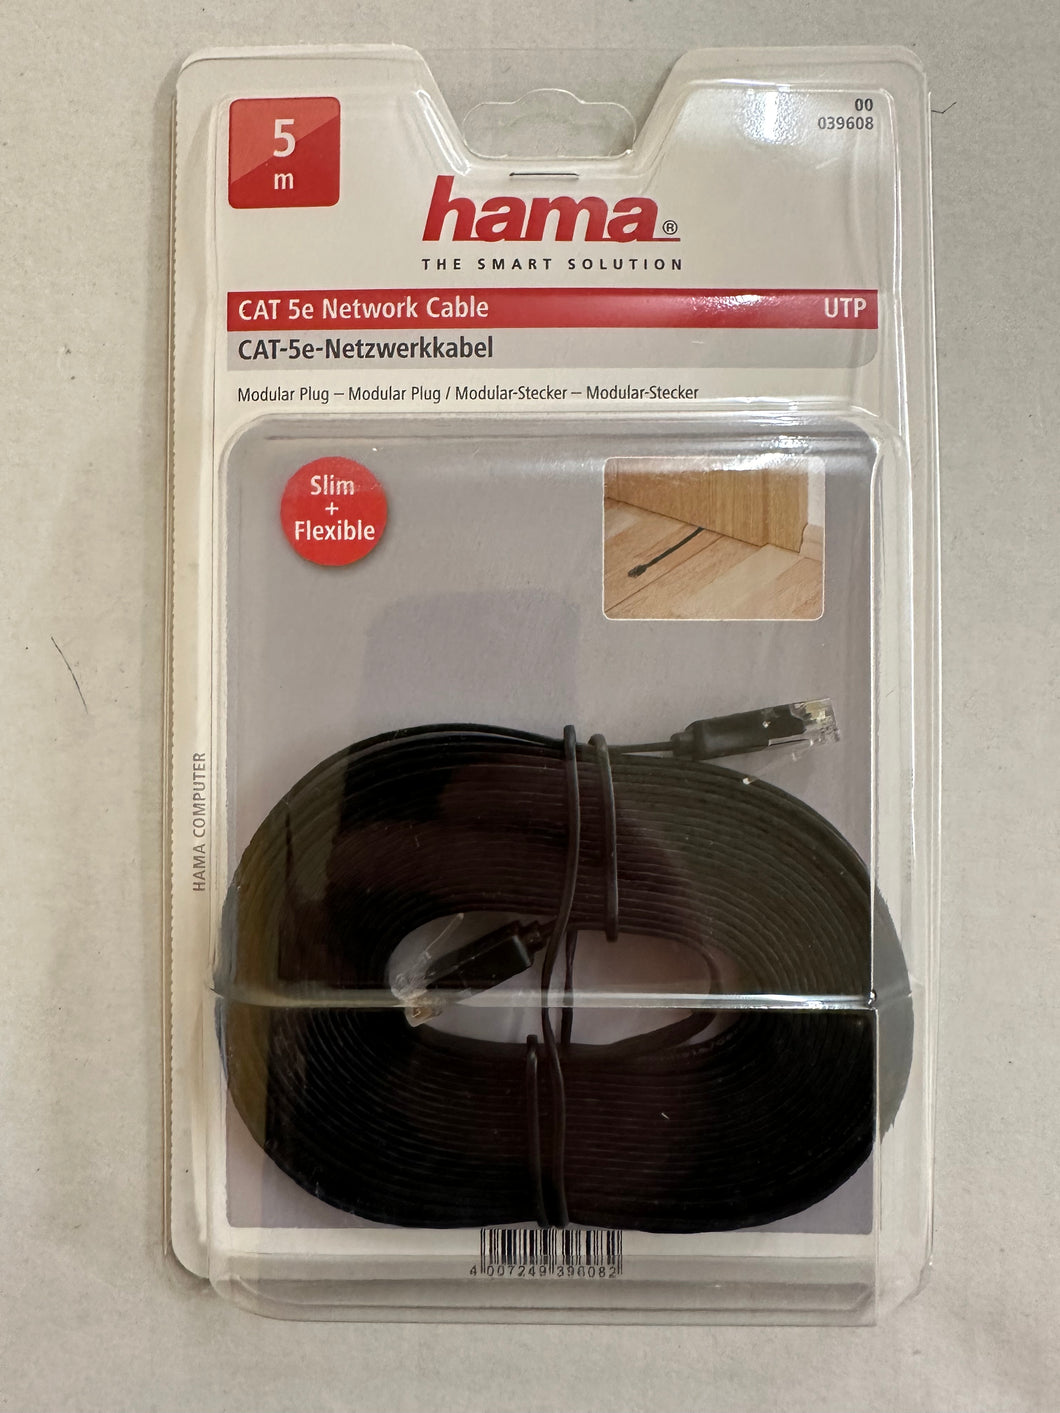 Hama 00039608 CAT-5e-Netzwerkkabel UTP flach 5,00 m (Schwarz)